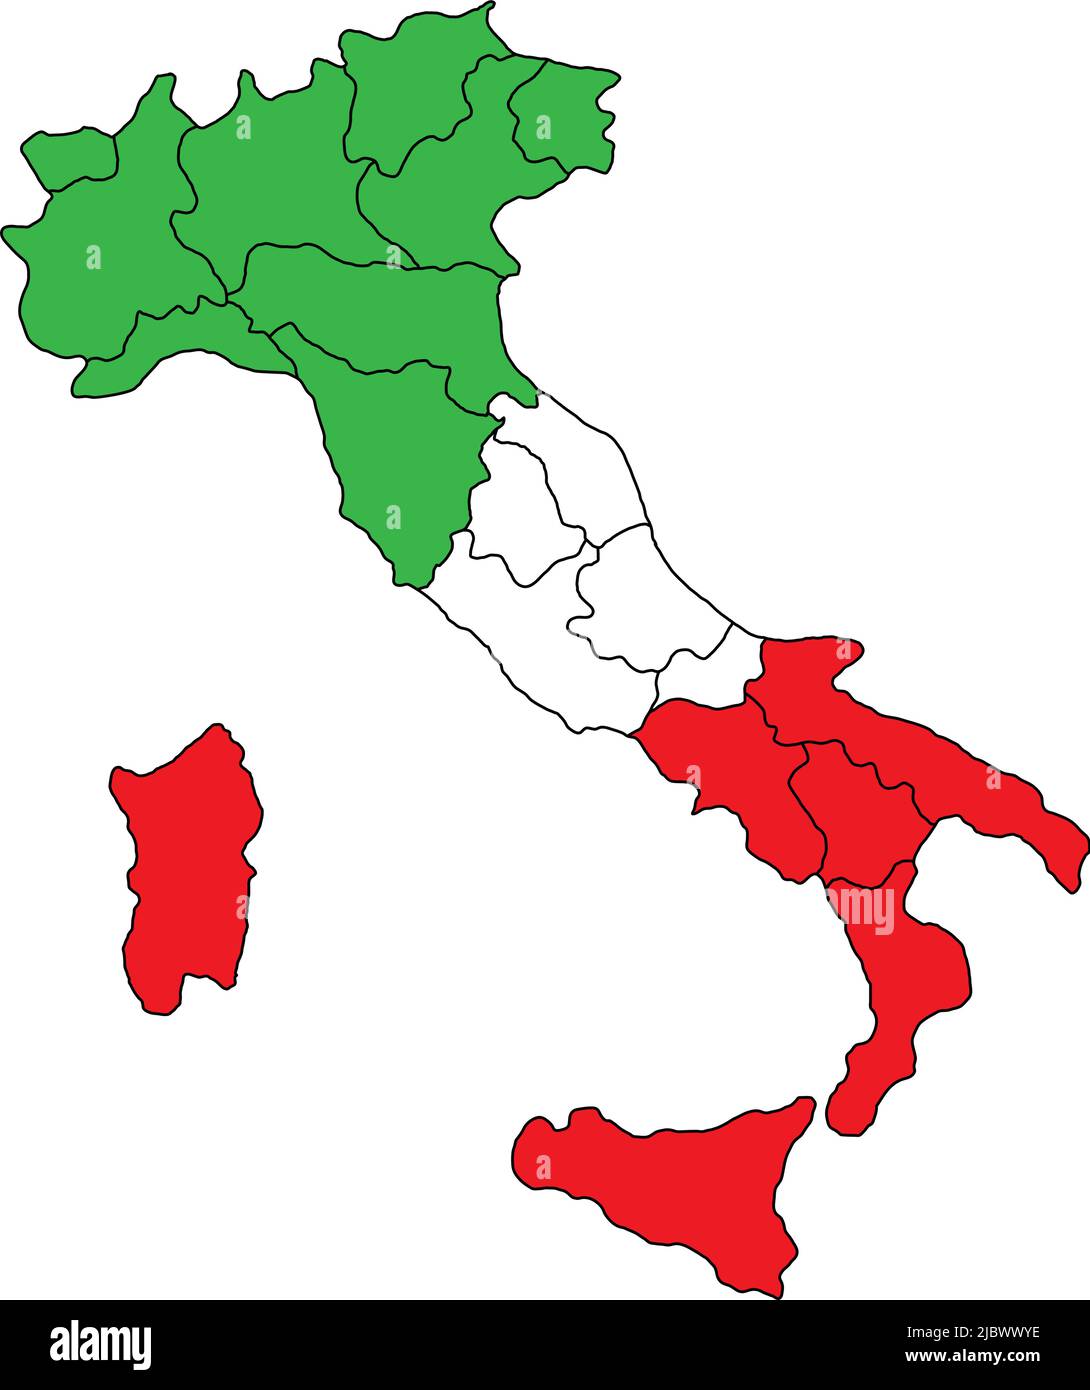 Carta dell'Italia con confini regionali. Mappa politica italiana colorata con confini amministrativi regionali. Illustrazione Vettoriale